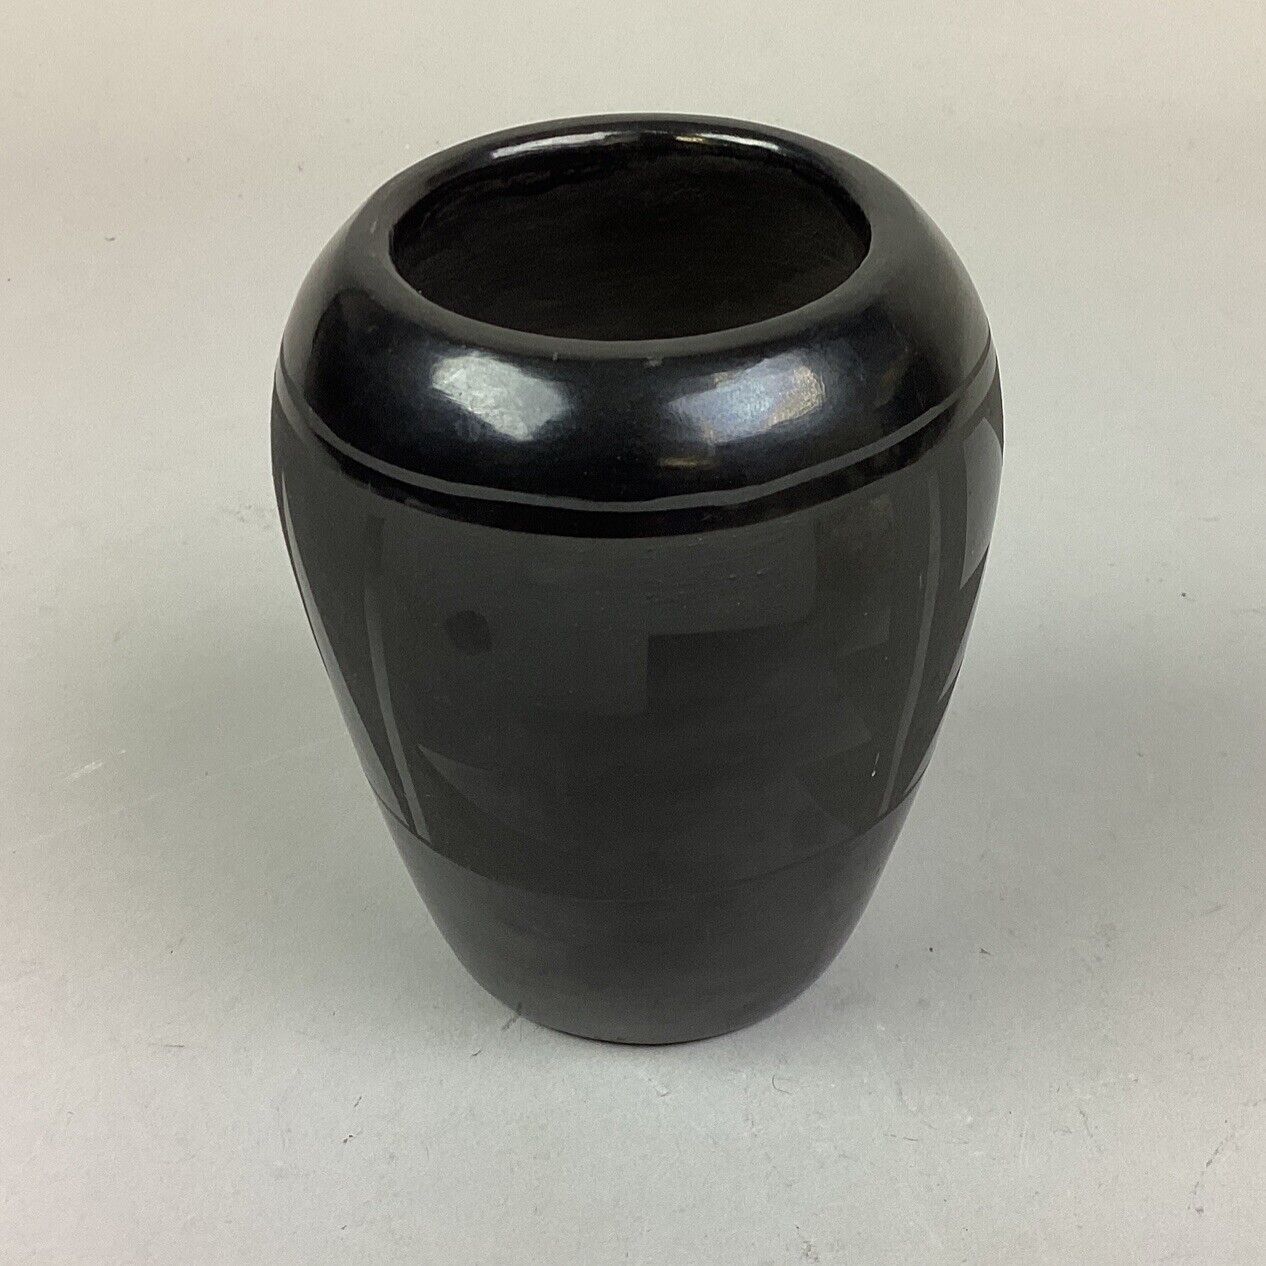 Santa Clara Pottery Vase - Sua20 - 4 3/4”